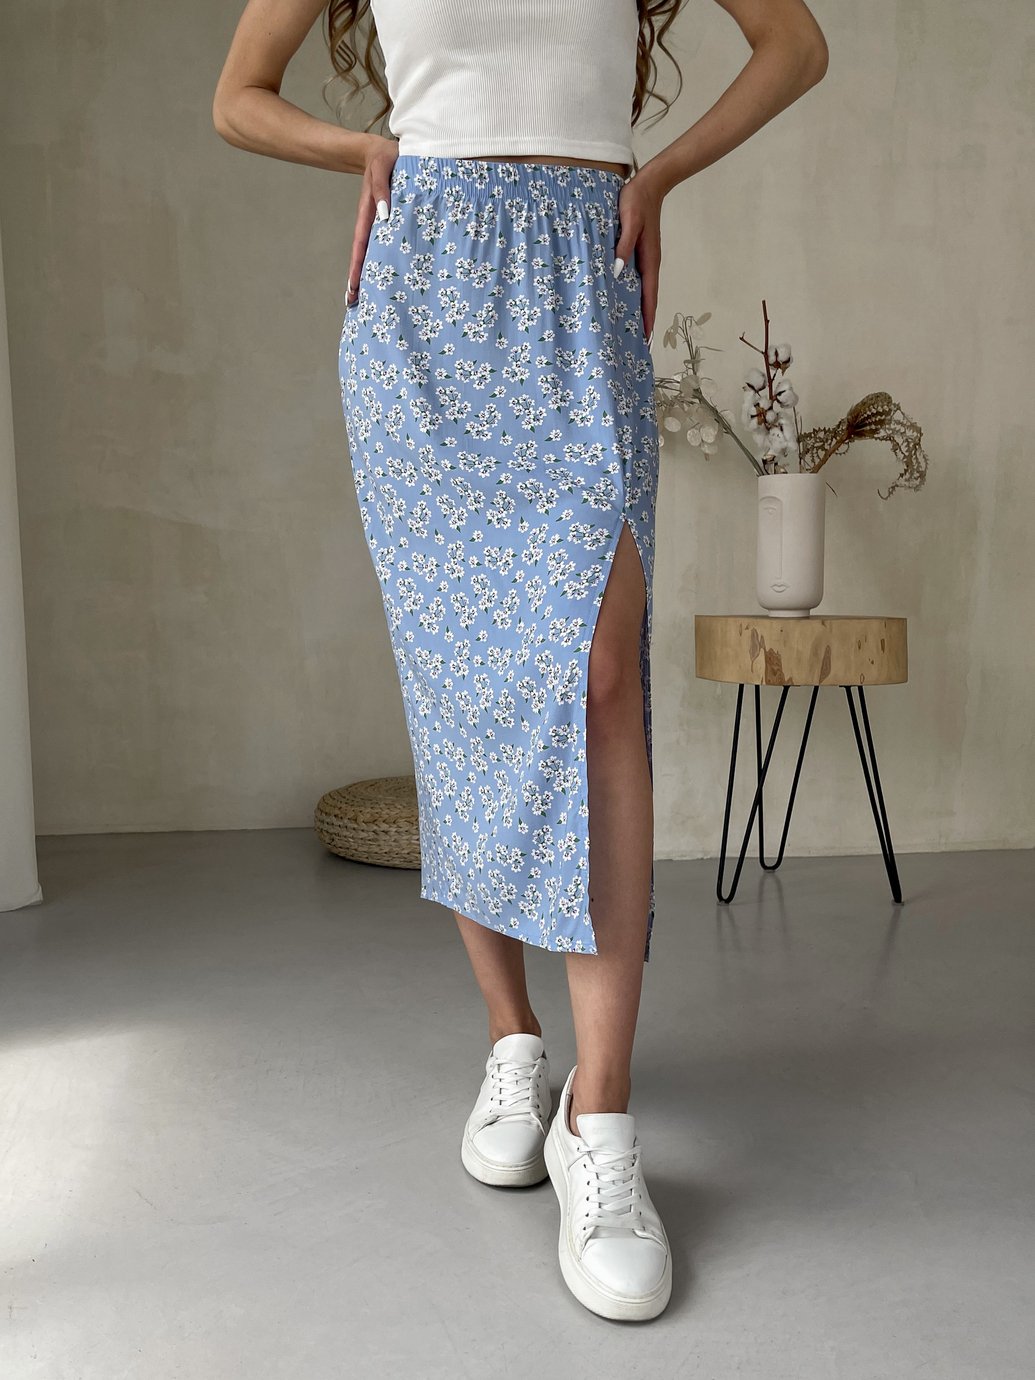 Купить Длинная женская юбка ниже колена с размером в цветочек Merlini Равенна 400000124, размер 50-52 (2XL-3XL) в интернет-магазине